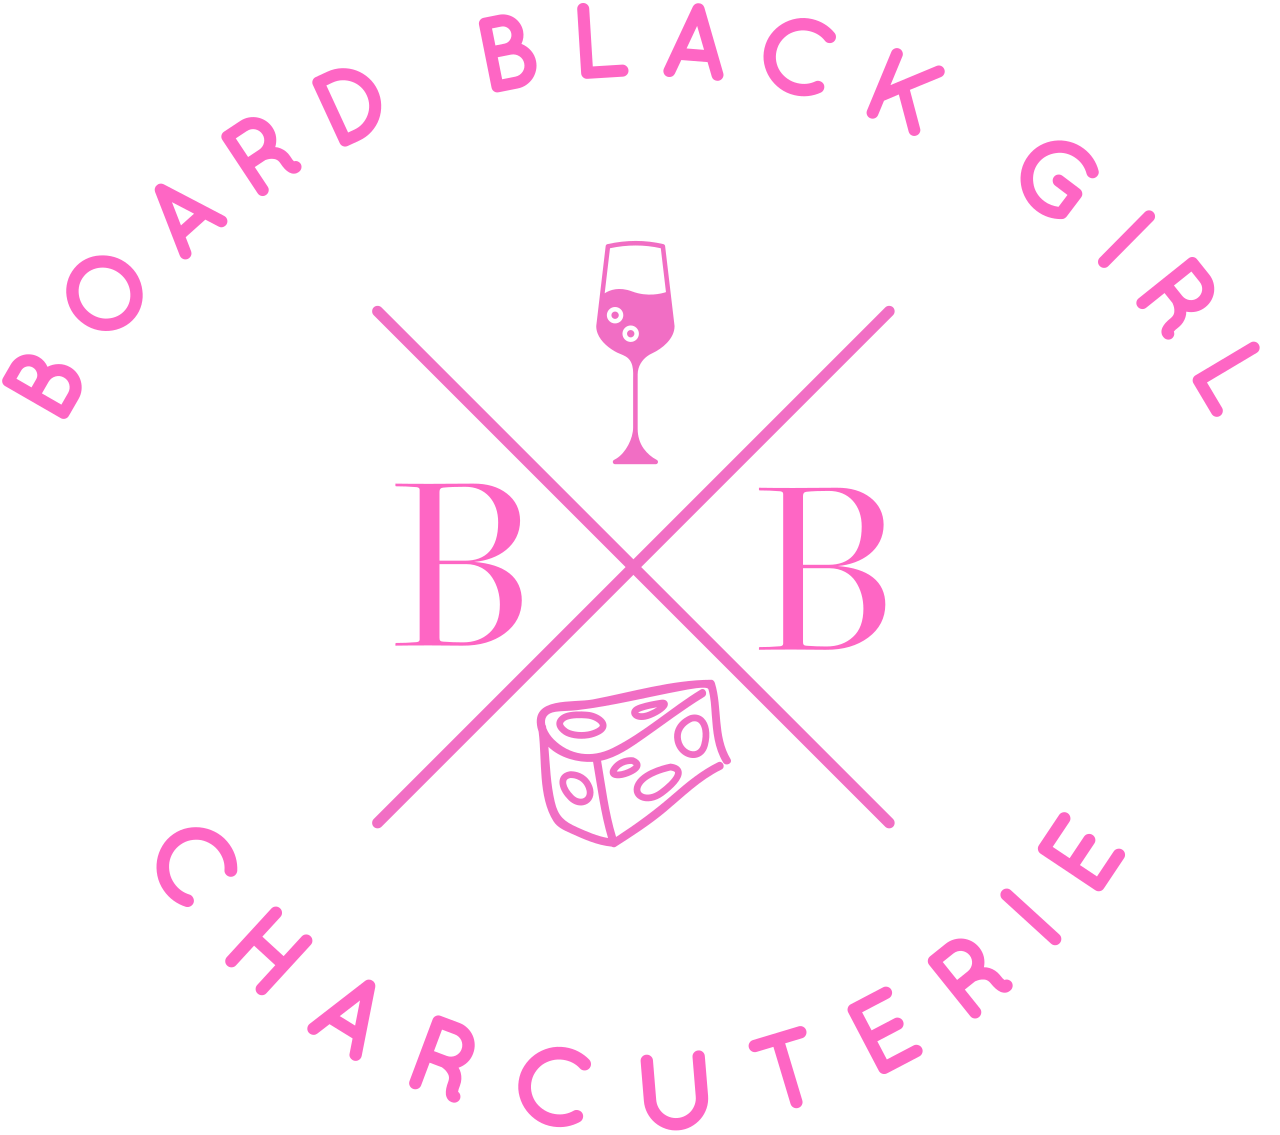 BOARD BLACK GIRL 's logo